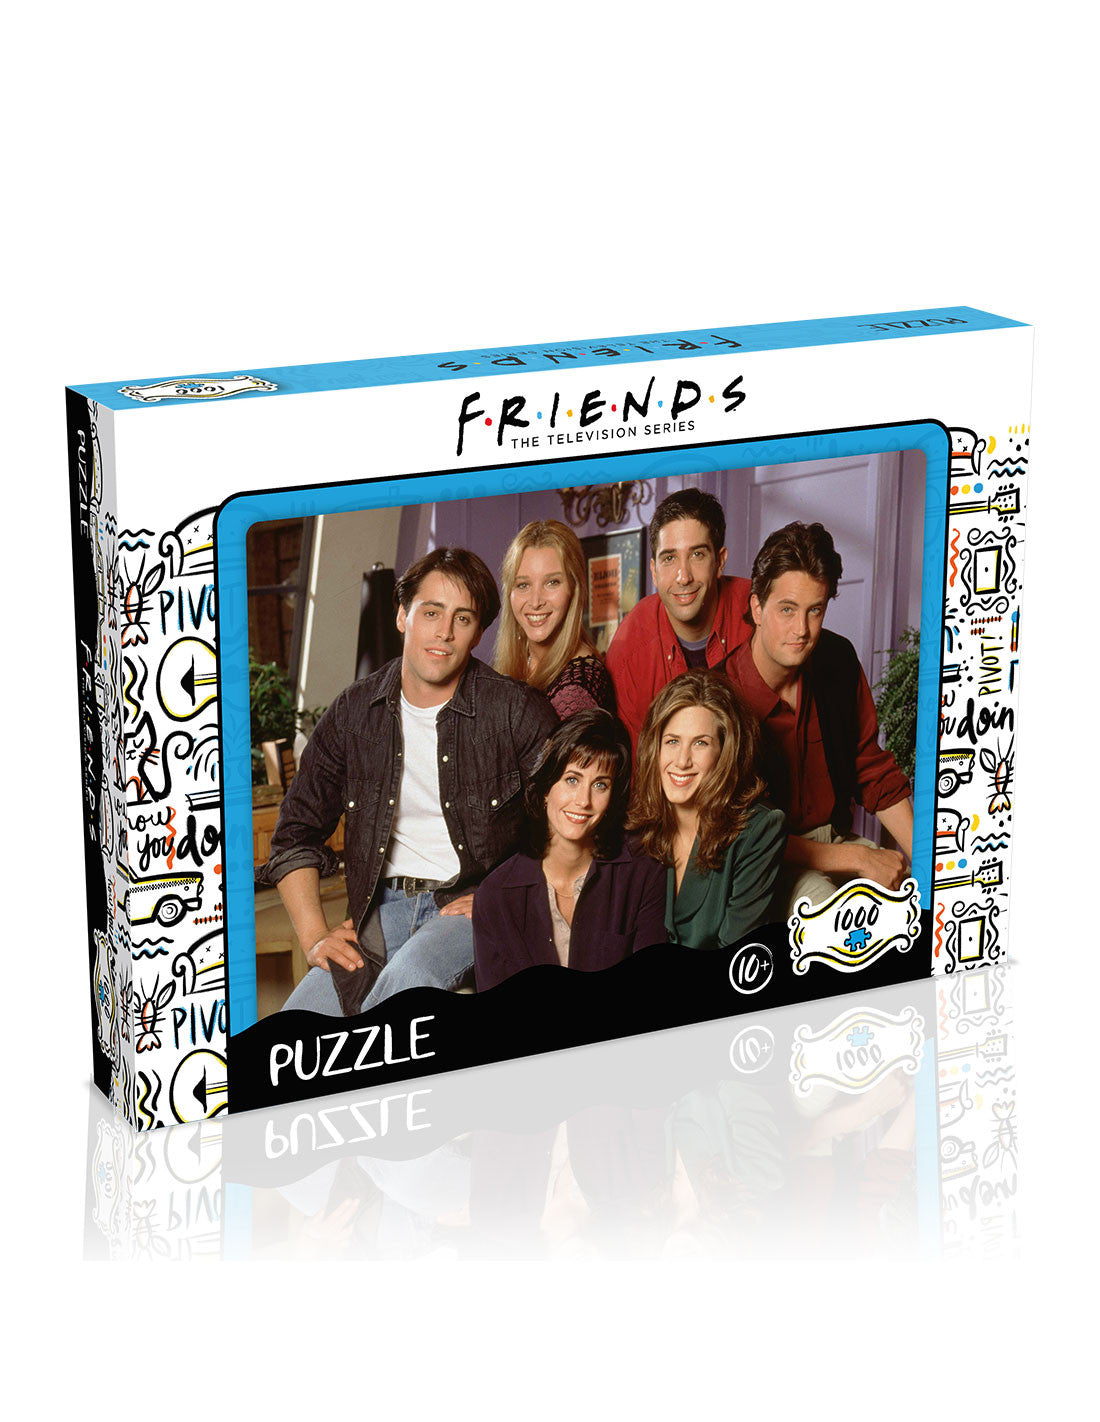 Puzzle FRIENDS - Apartment - 1000 pieces